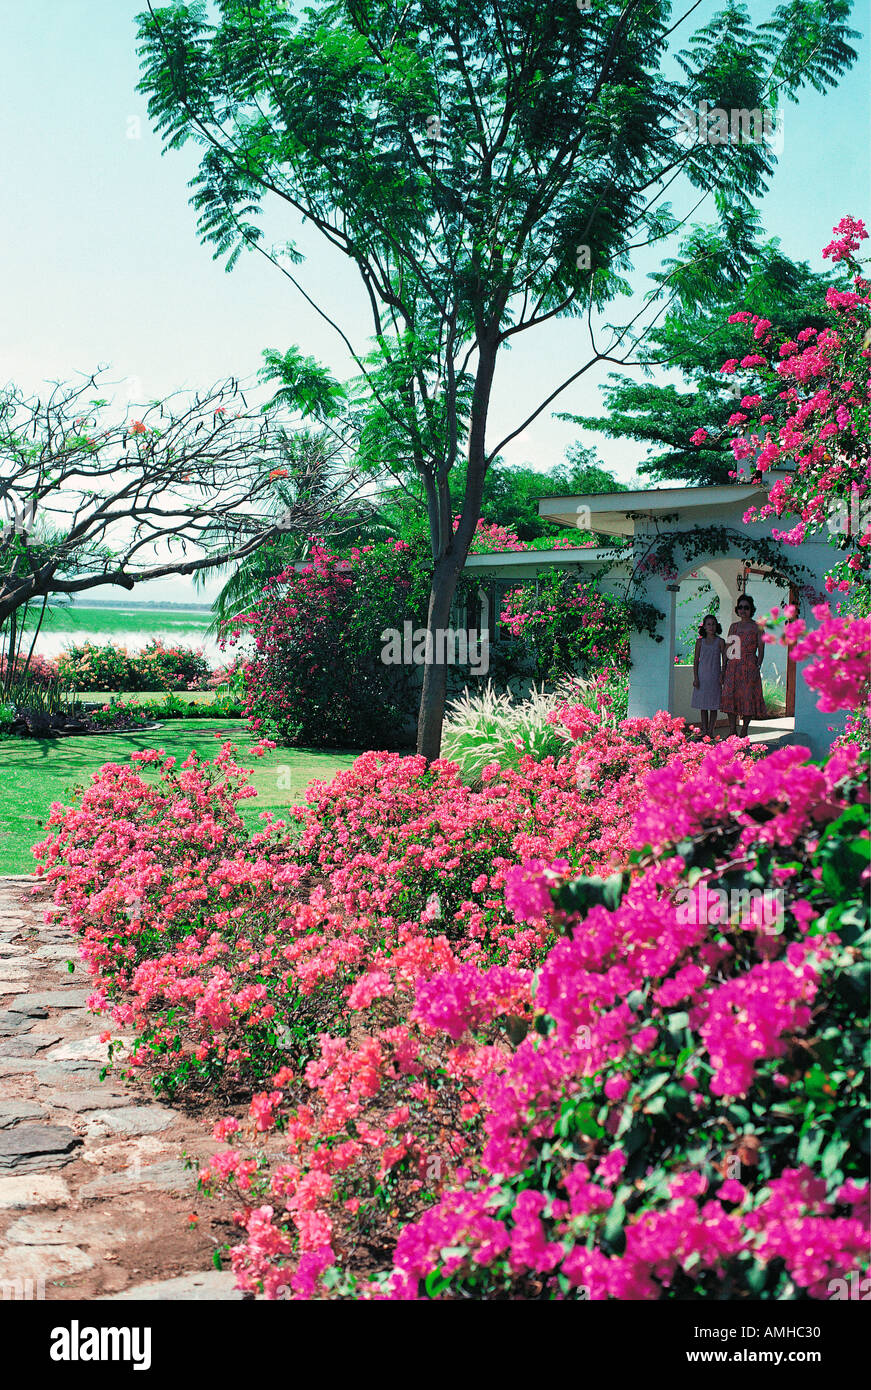 El Bougainvillea arbustos con flores de malva y rosa roja en los jardines del lago Baringo Club Foto de stock